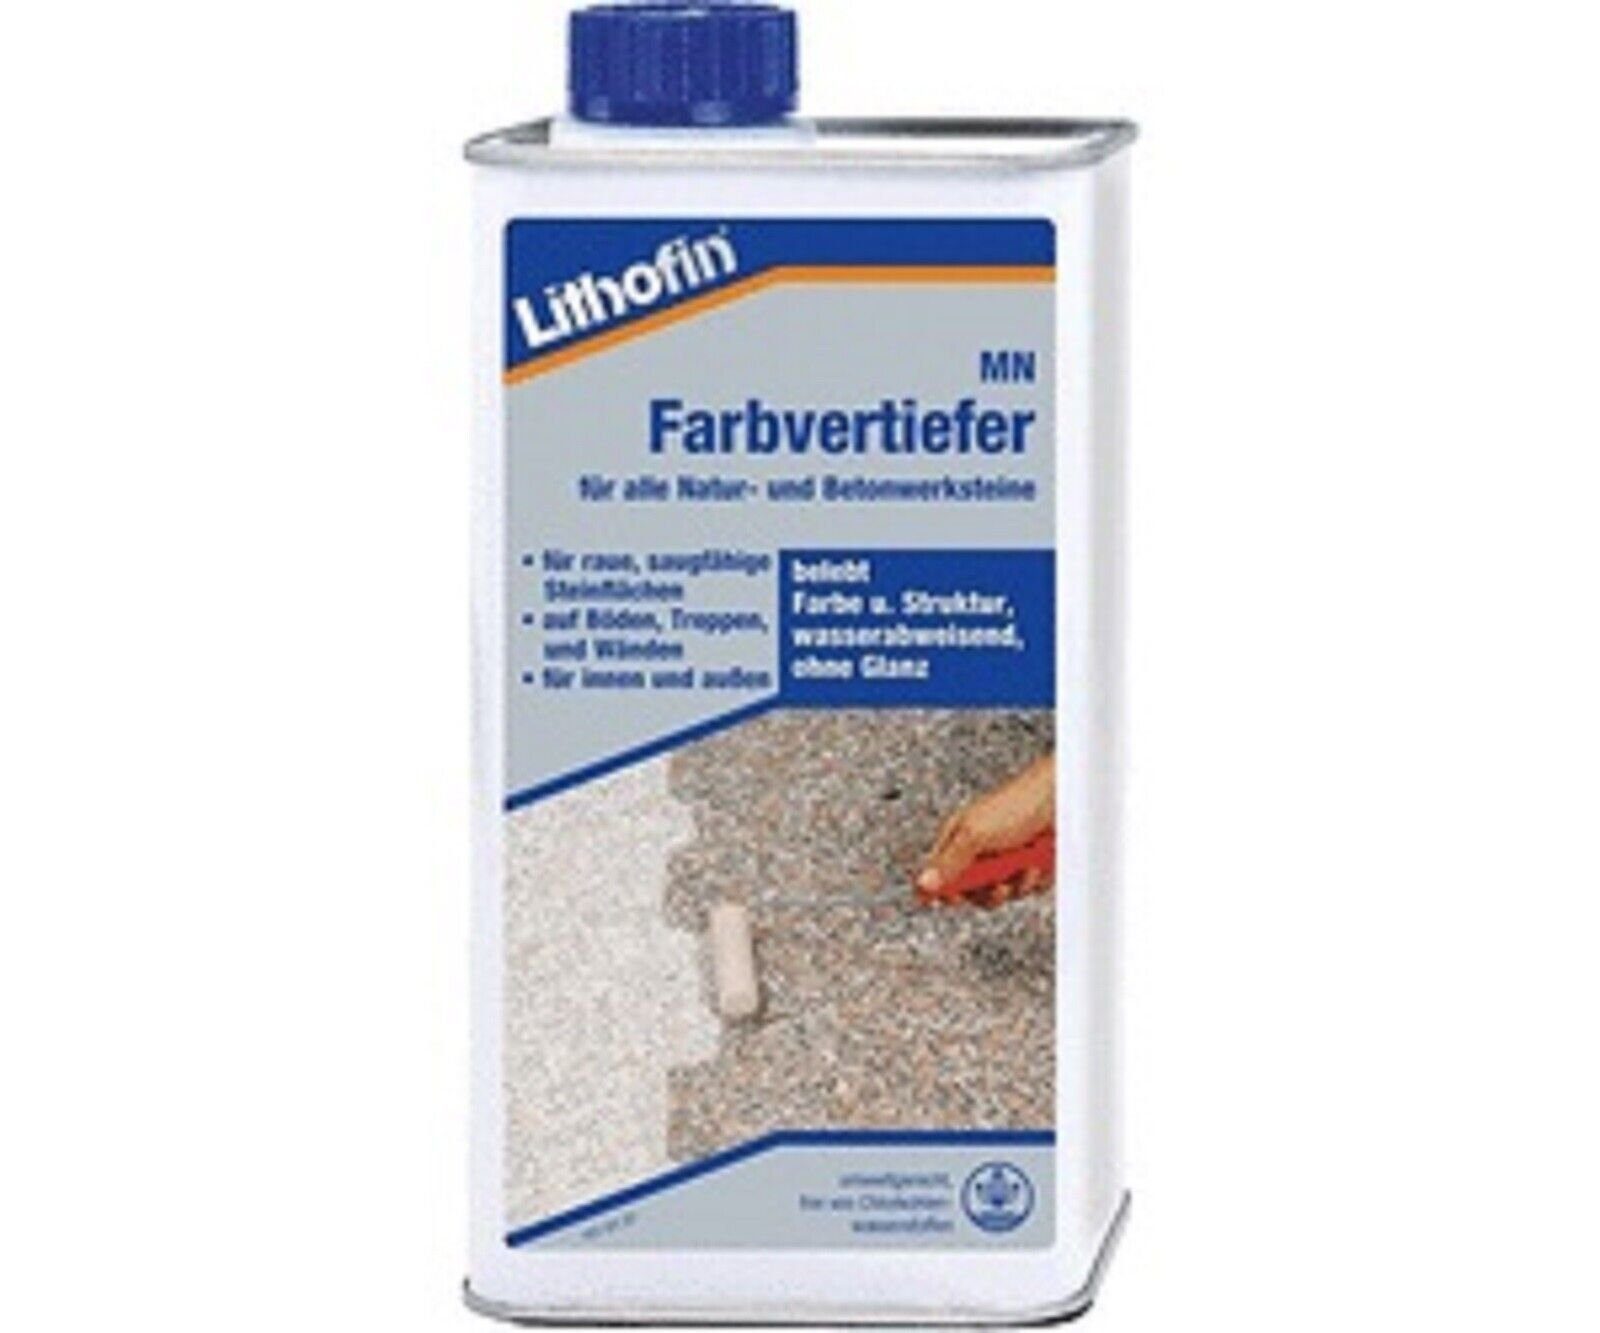 Lithofin Lithofin MN Farbvertiefer 1 Liter Naturstein-Reiniger